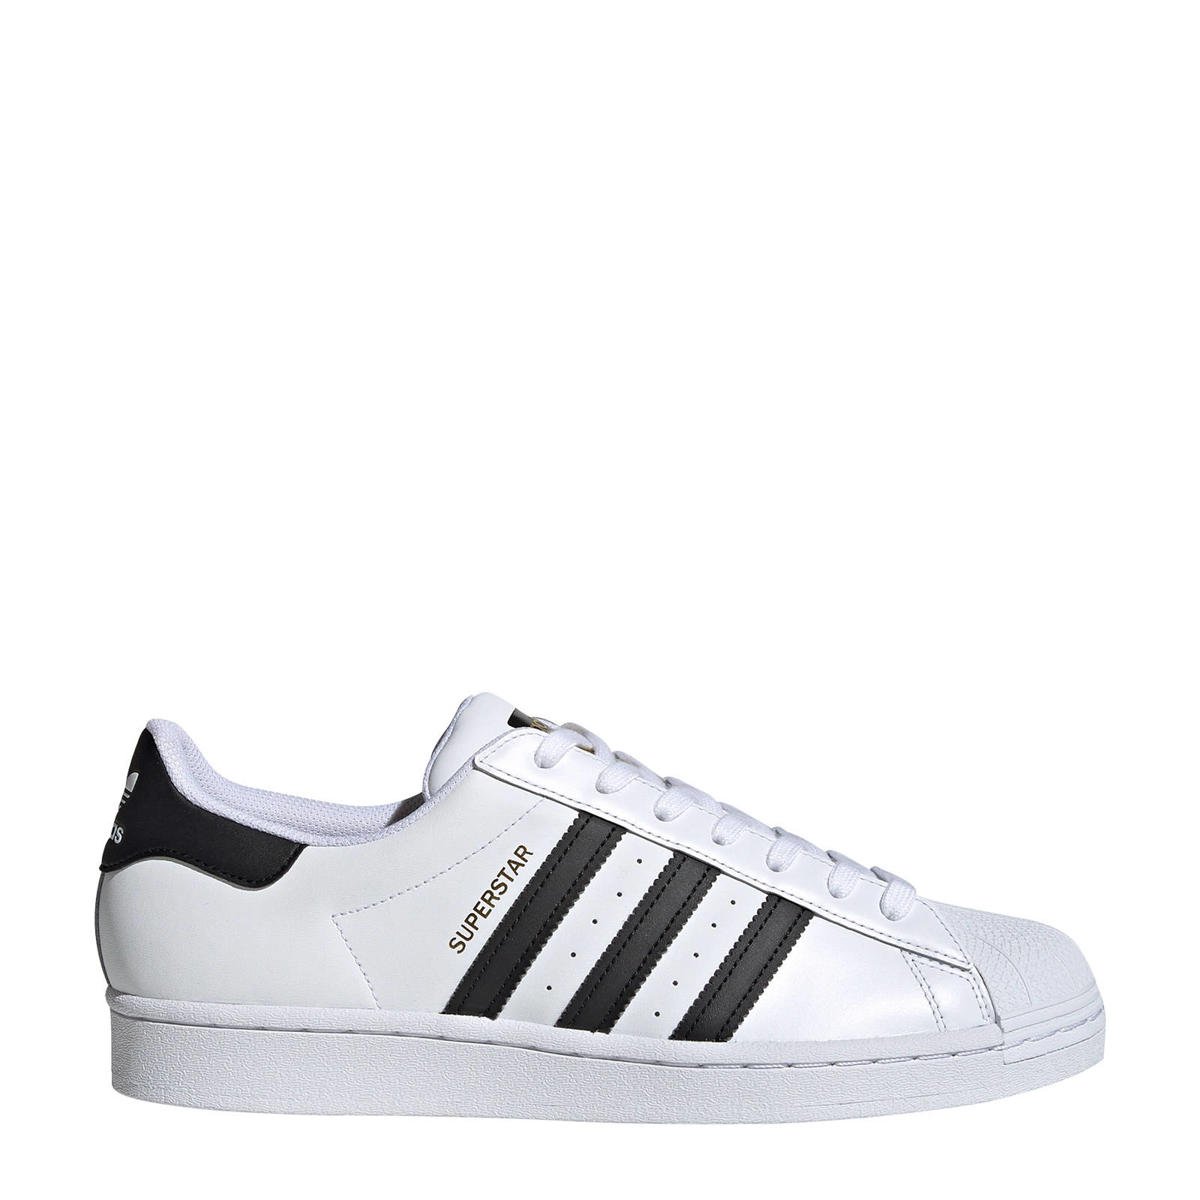 doen alsof B.C. Bedoel adidas Originals Superstar sneakers wit/zwart | wehkamp